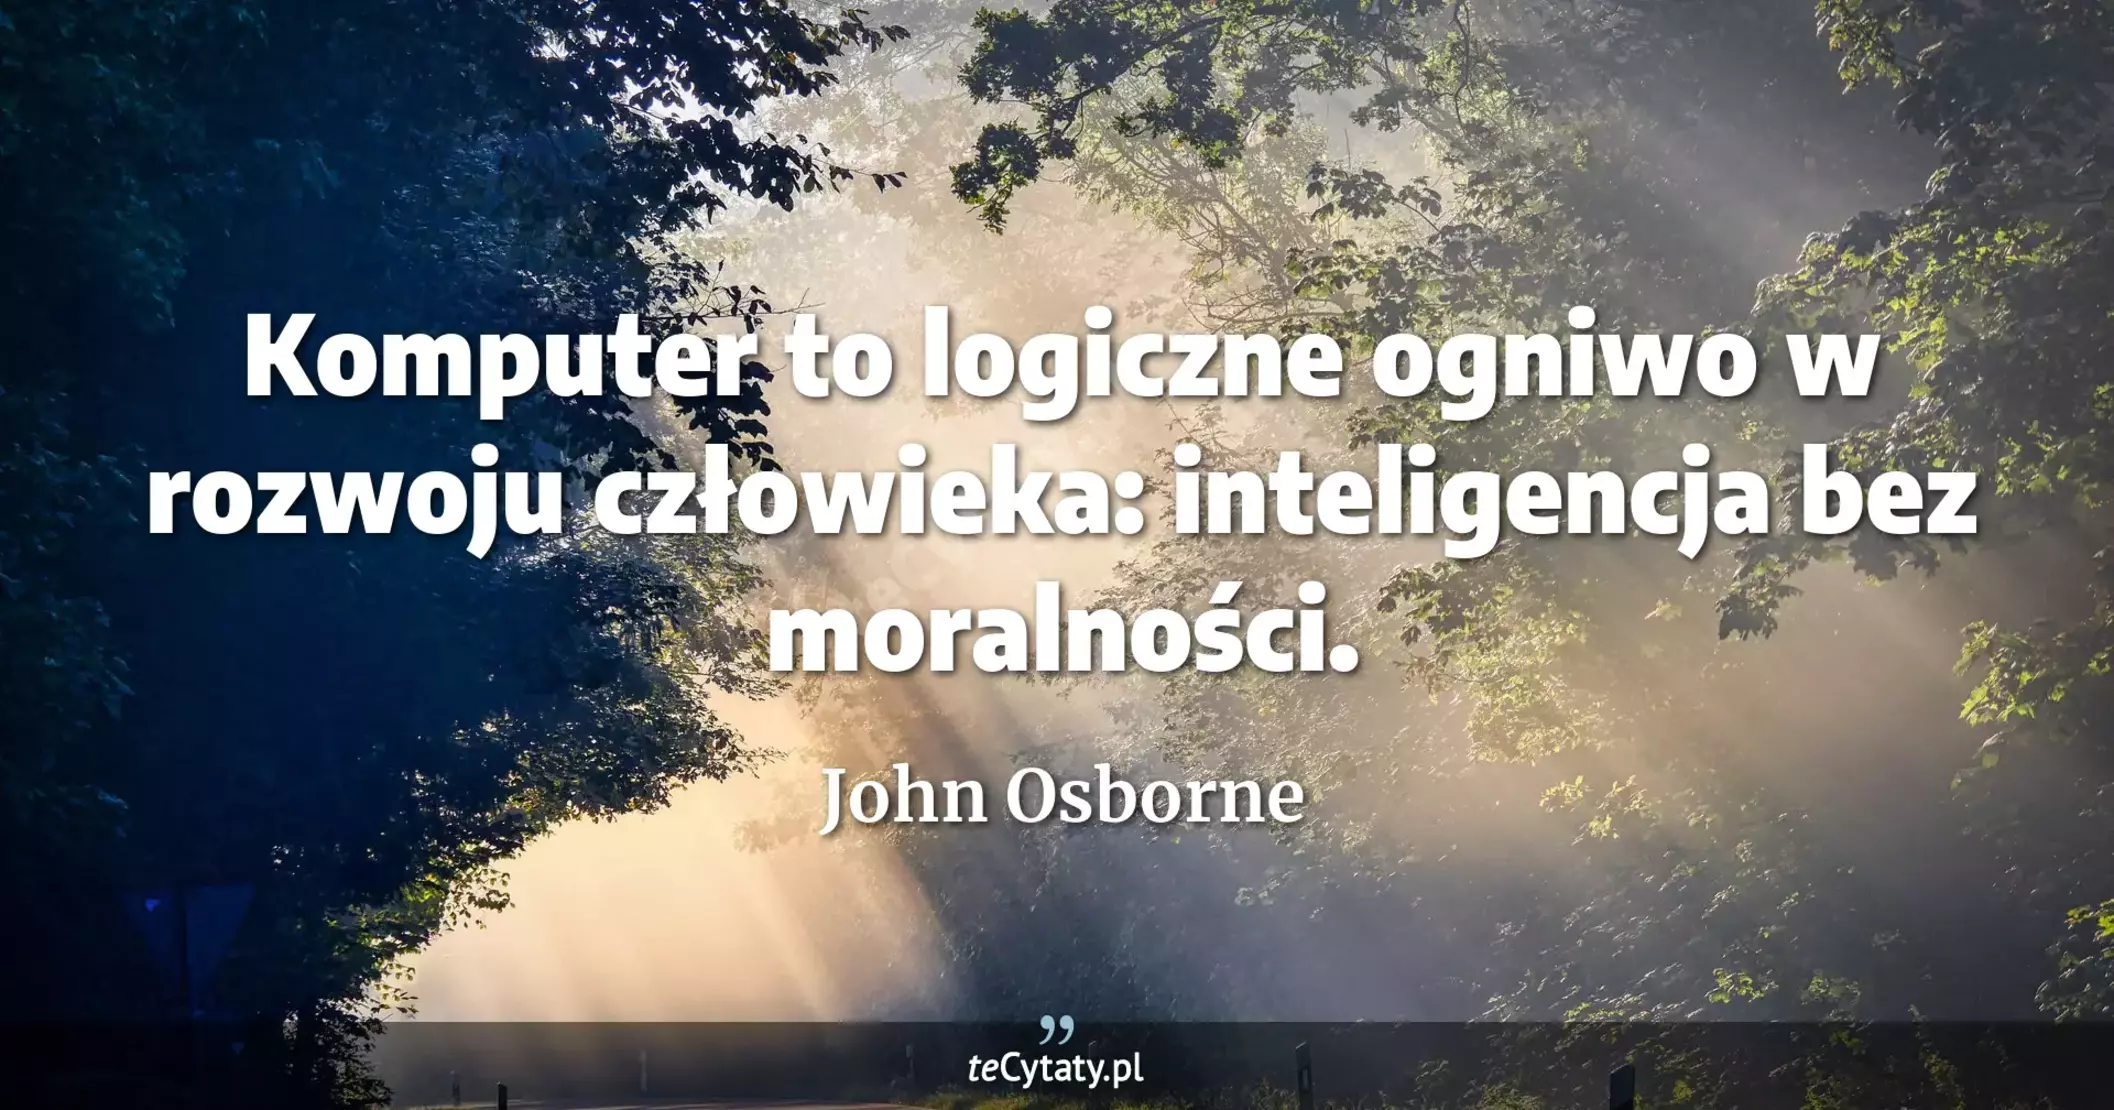 Komputer to logiczne ogniwo w rozwoju człowieka: inteligencja bez moralności. - John Osborne